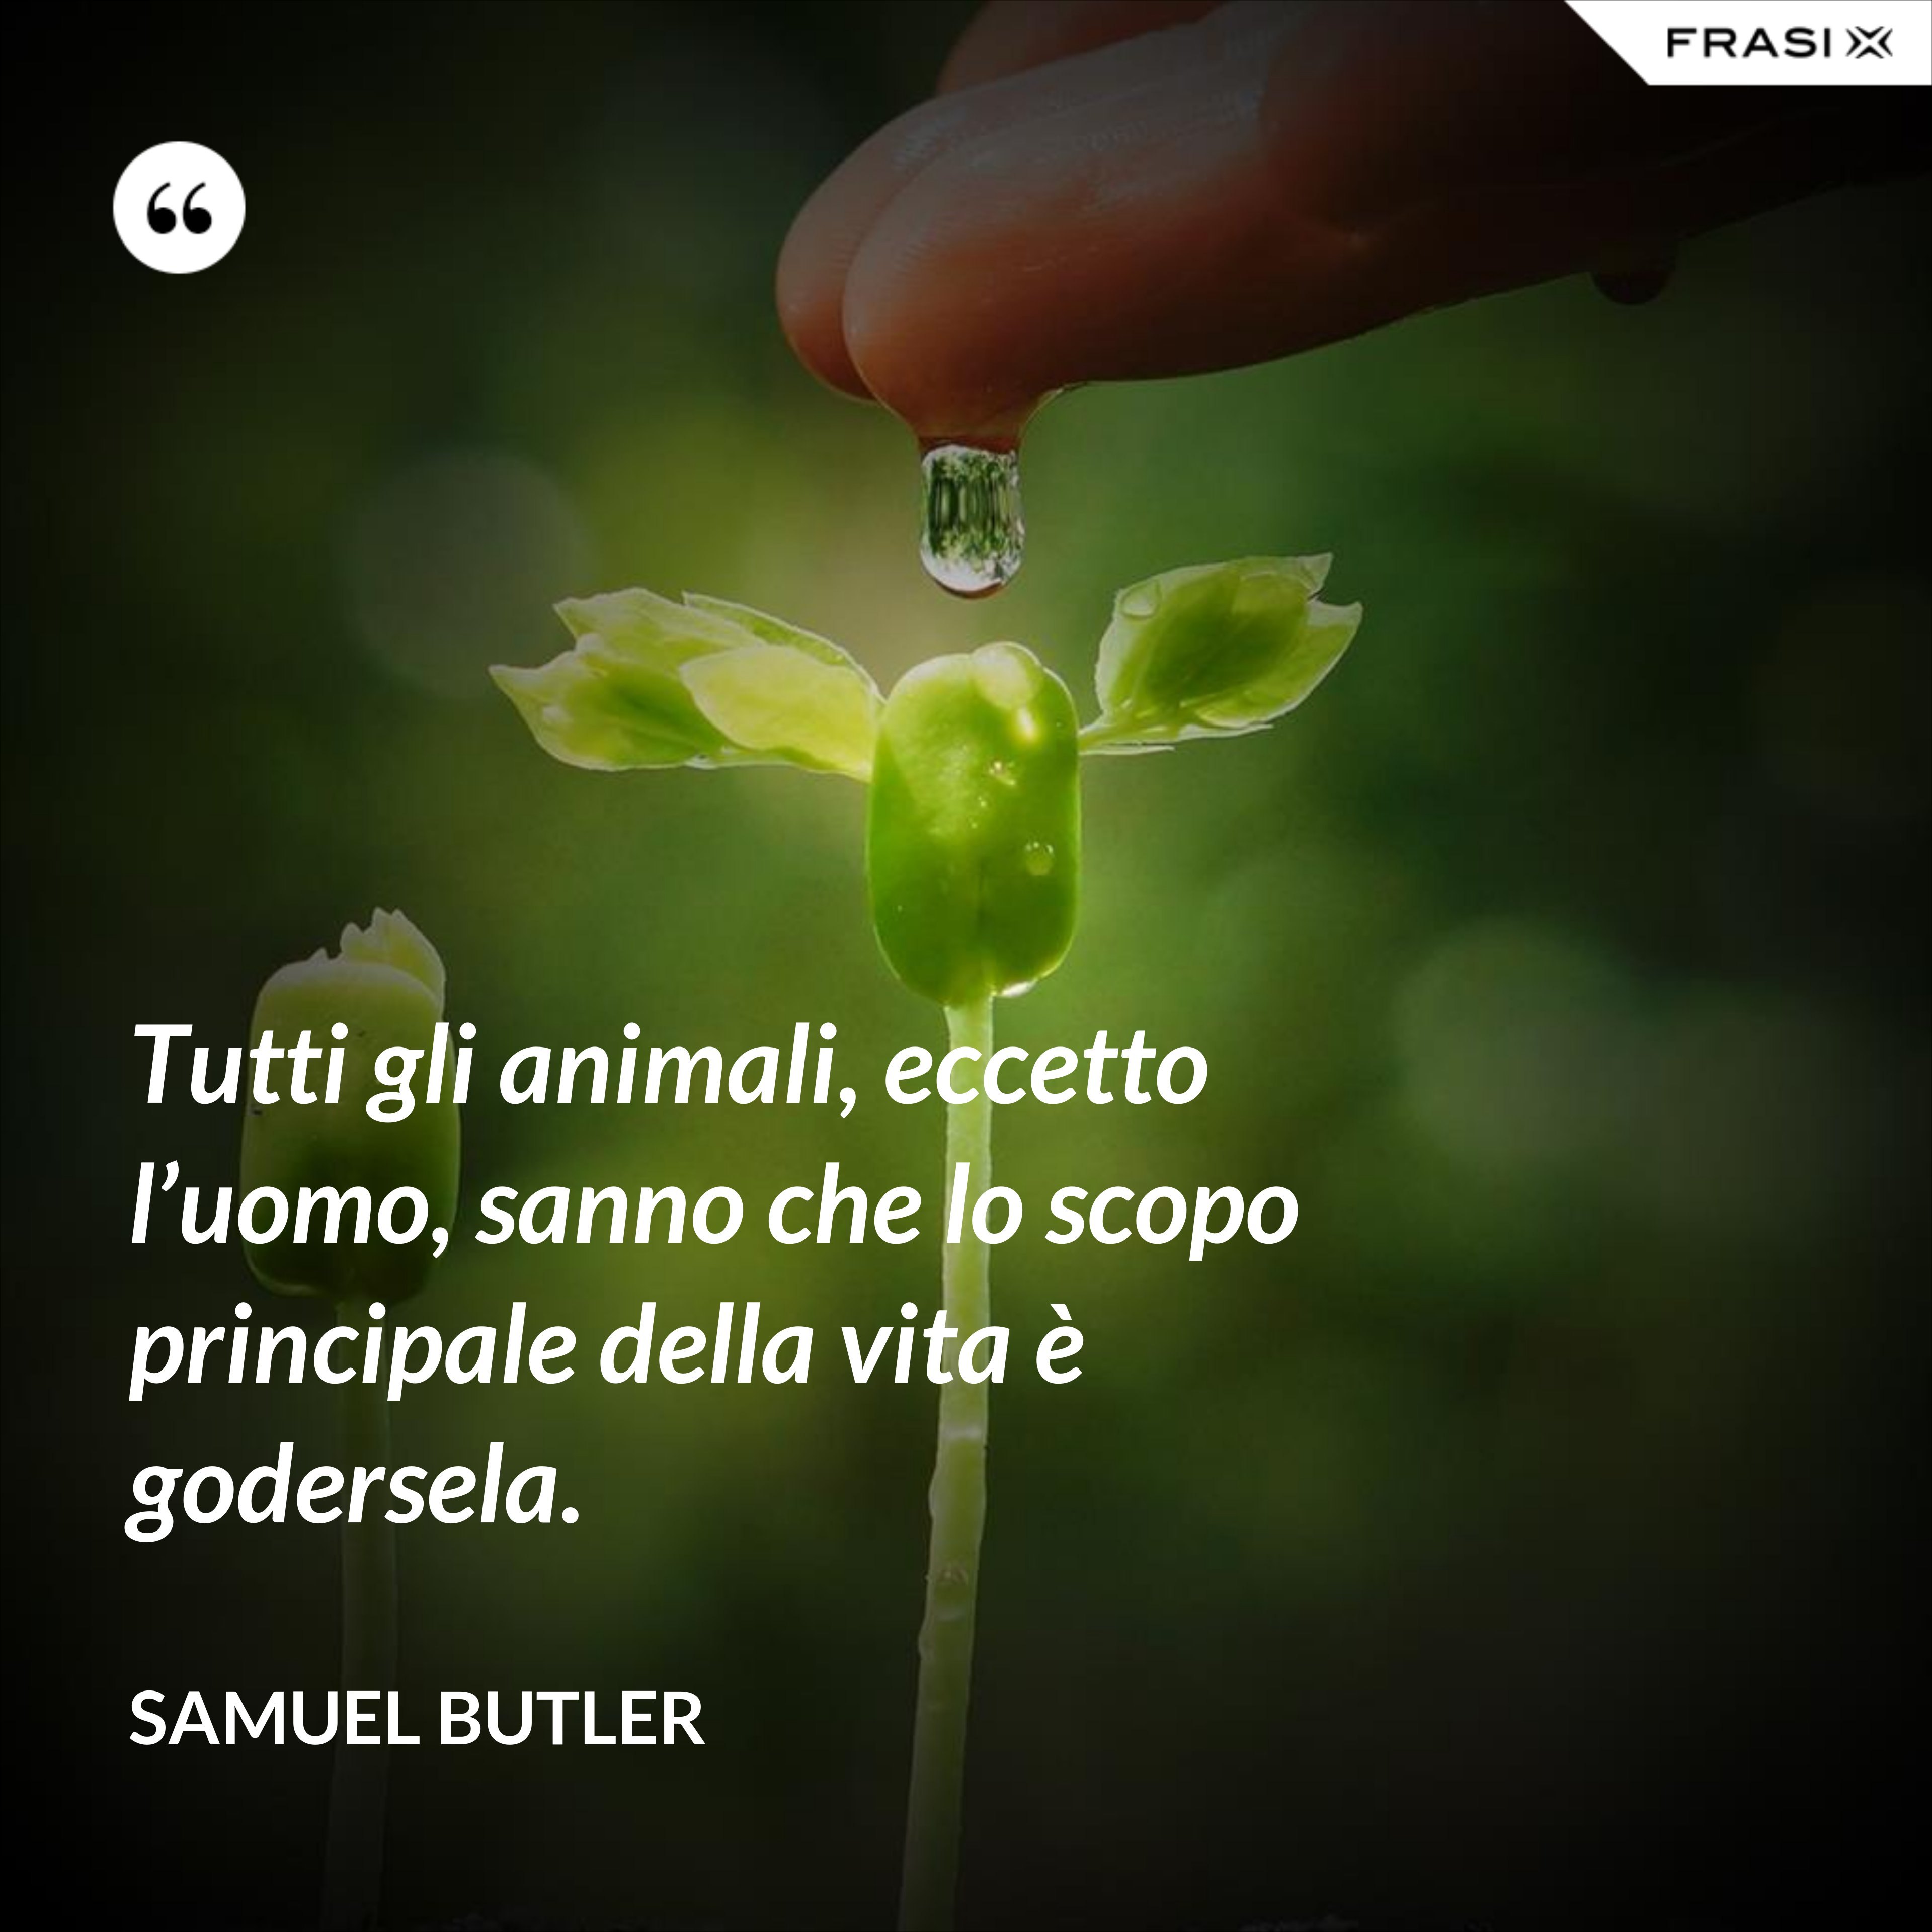 Tutti gli animali, eccetto l’uomo, sanno che lo scopo principale della vita è godersela. - Samuel Butler